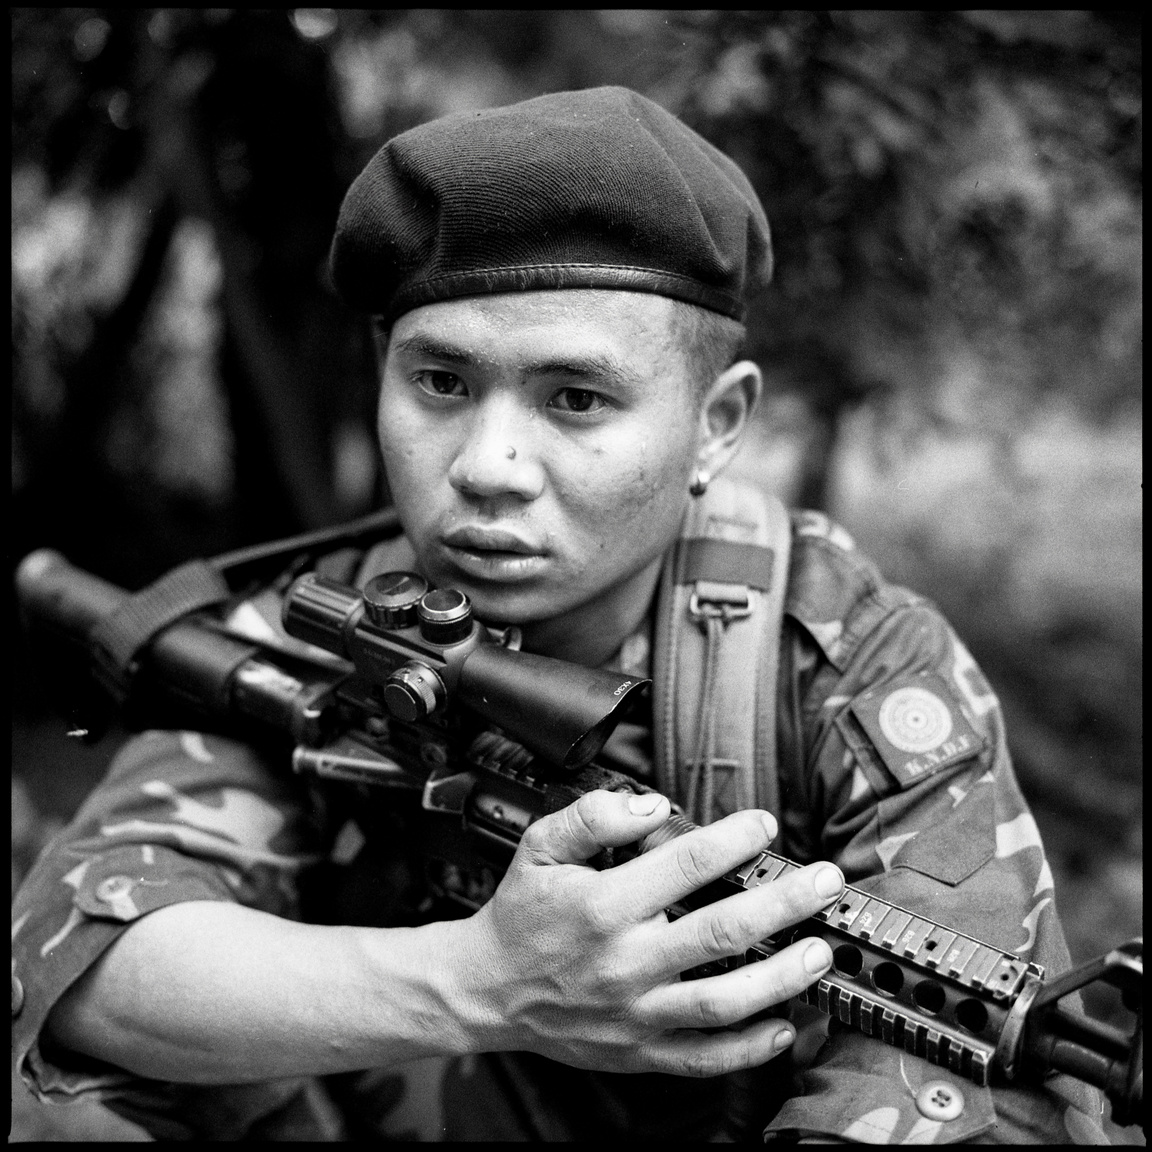 Forradalom Mianmarban (Hosszú távú projekt - Délkelet-Ázsia és Óceánia) 
                        Paul Du, a Népvédelmi Erők (PDF) lázadó harcosa egy fa alatt pihen a frontvonalon